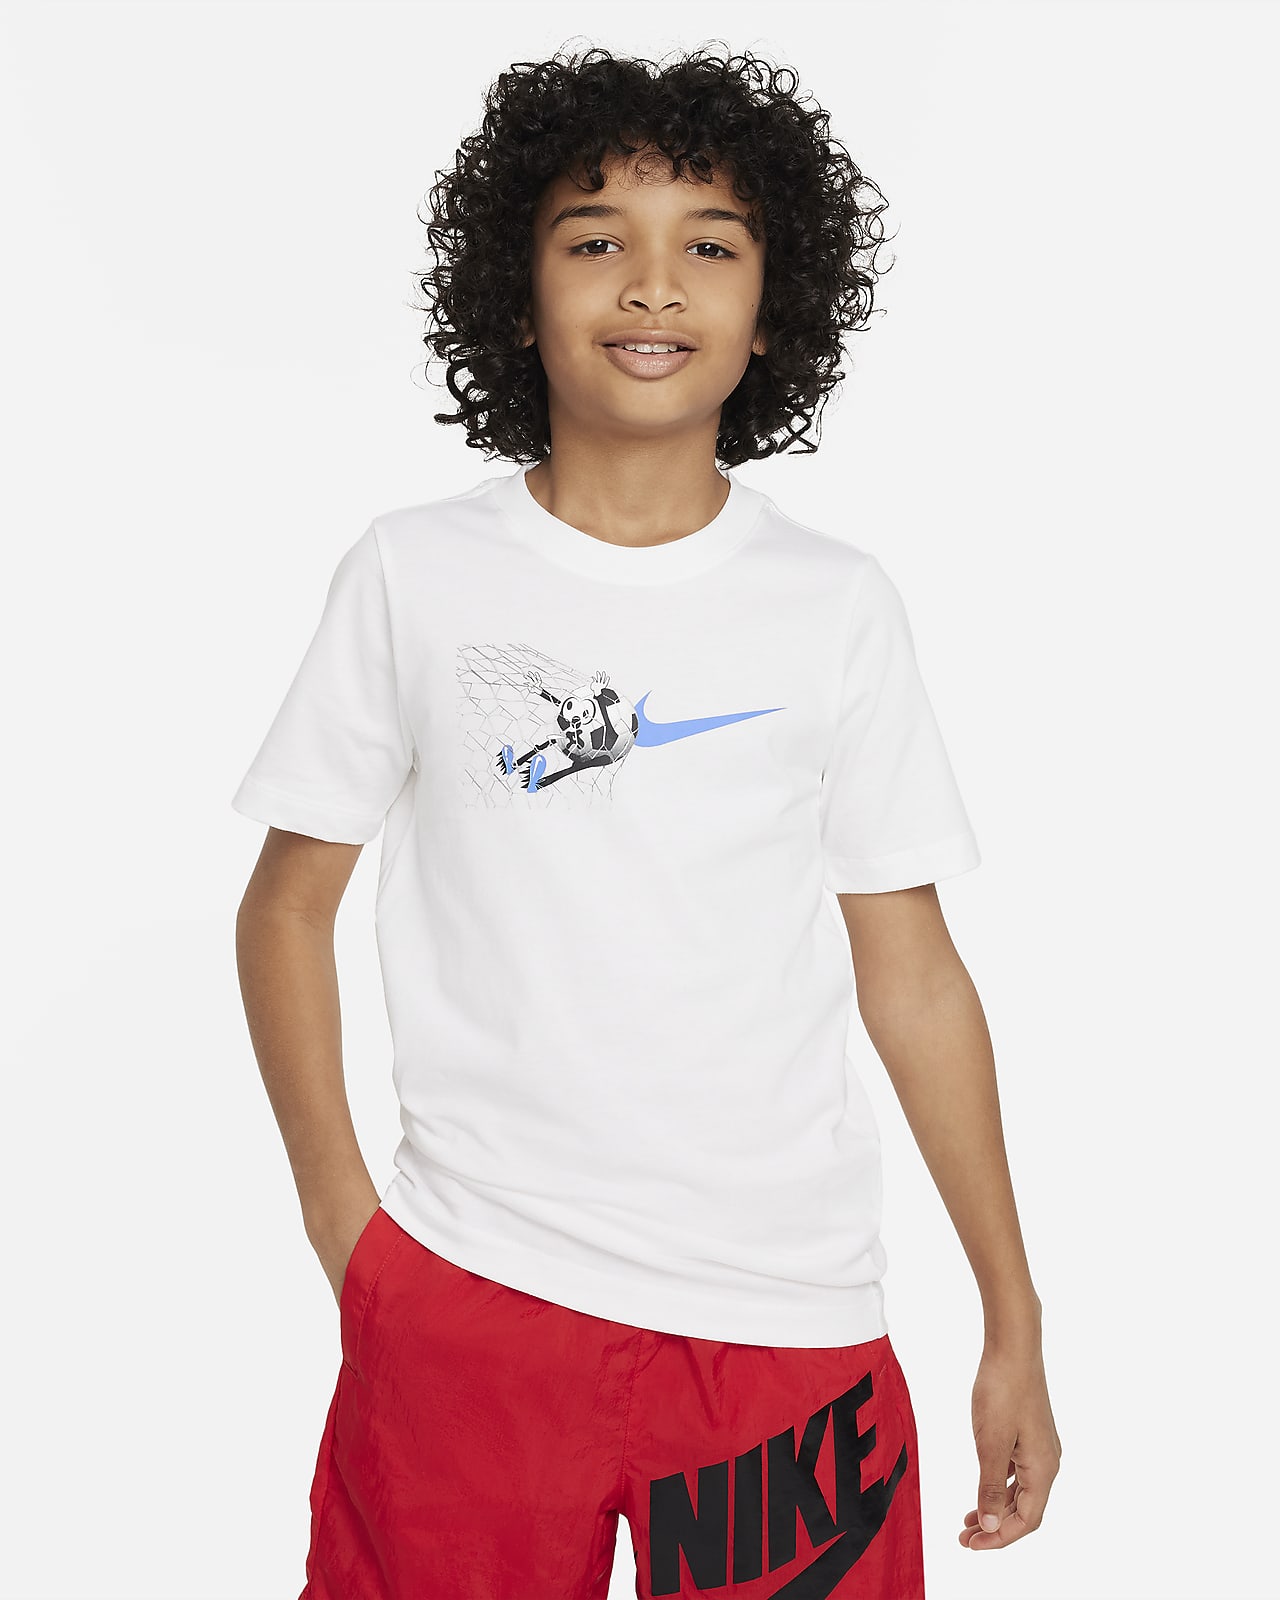 Nike Sportswear Older Kids' T-Shirt. Nike HR